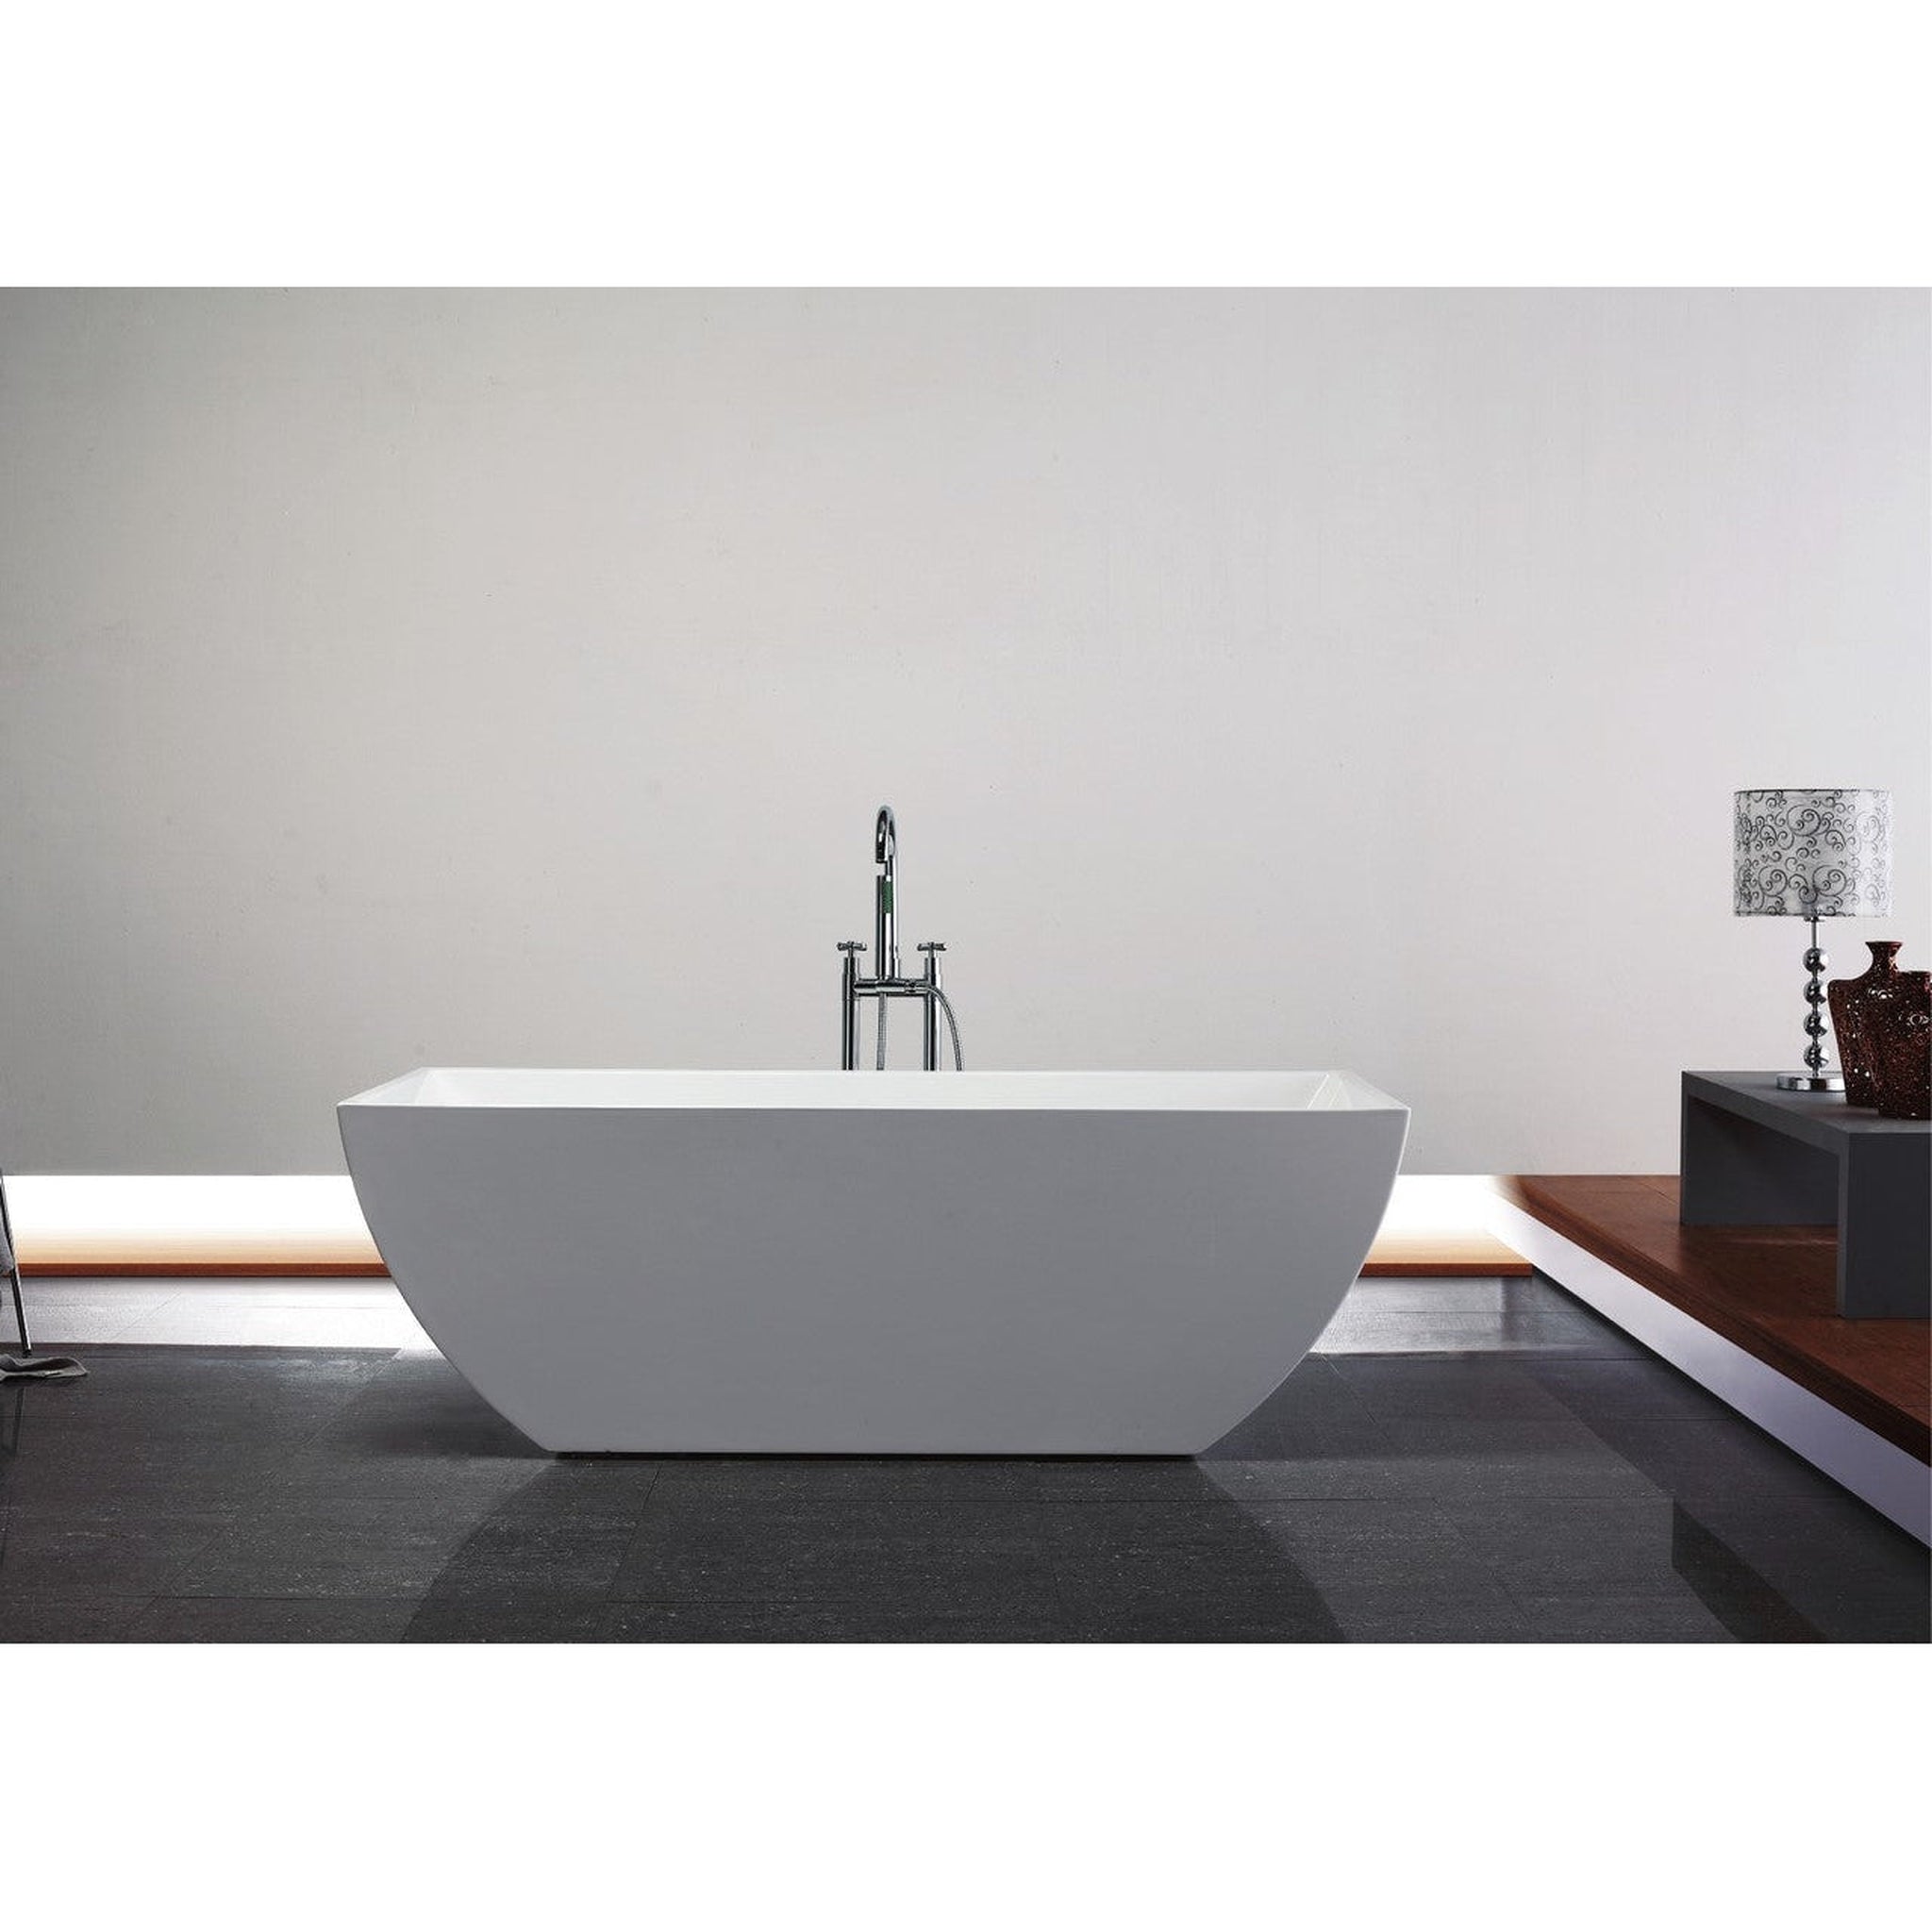 KubeBath, KubeBath Kube Contemporanea 67" White Acrylic Freestanding Bathtub With Slim Rectangular Overflow and Brass Pop-Up Drain